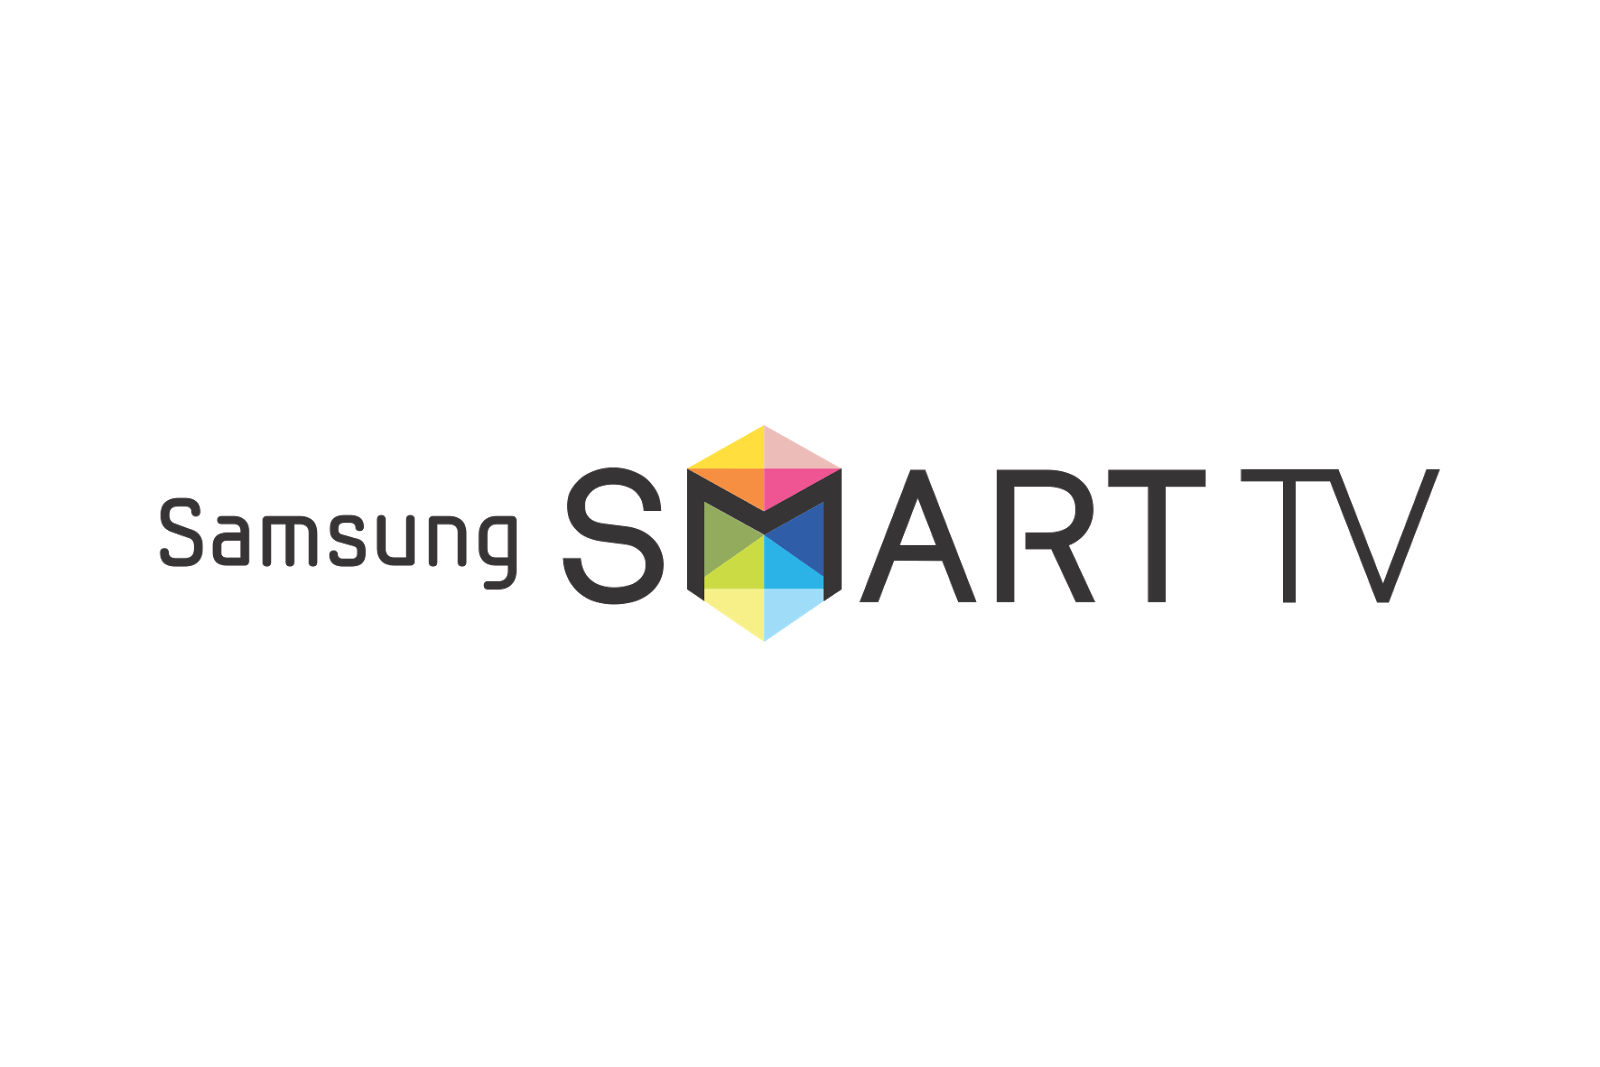 Samsung Smart TV Logo - Samsung Smart TV Logo